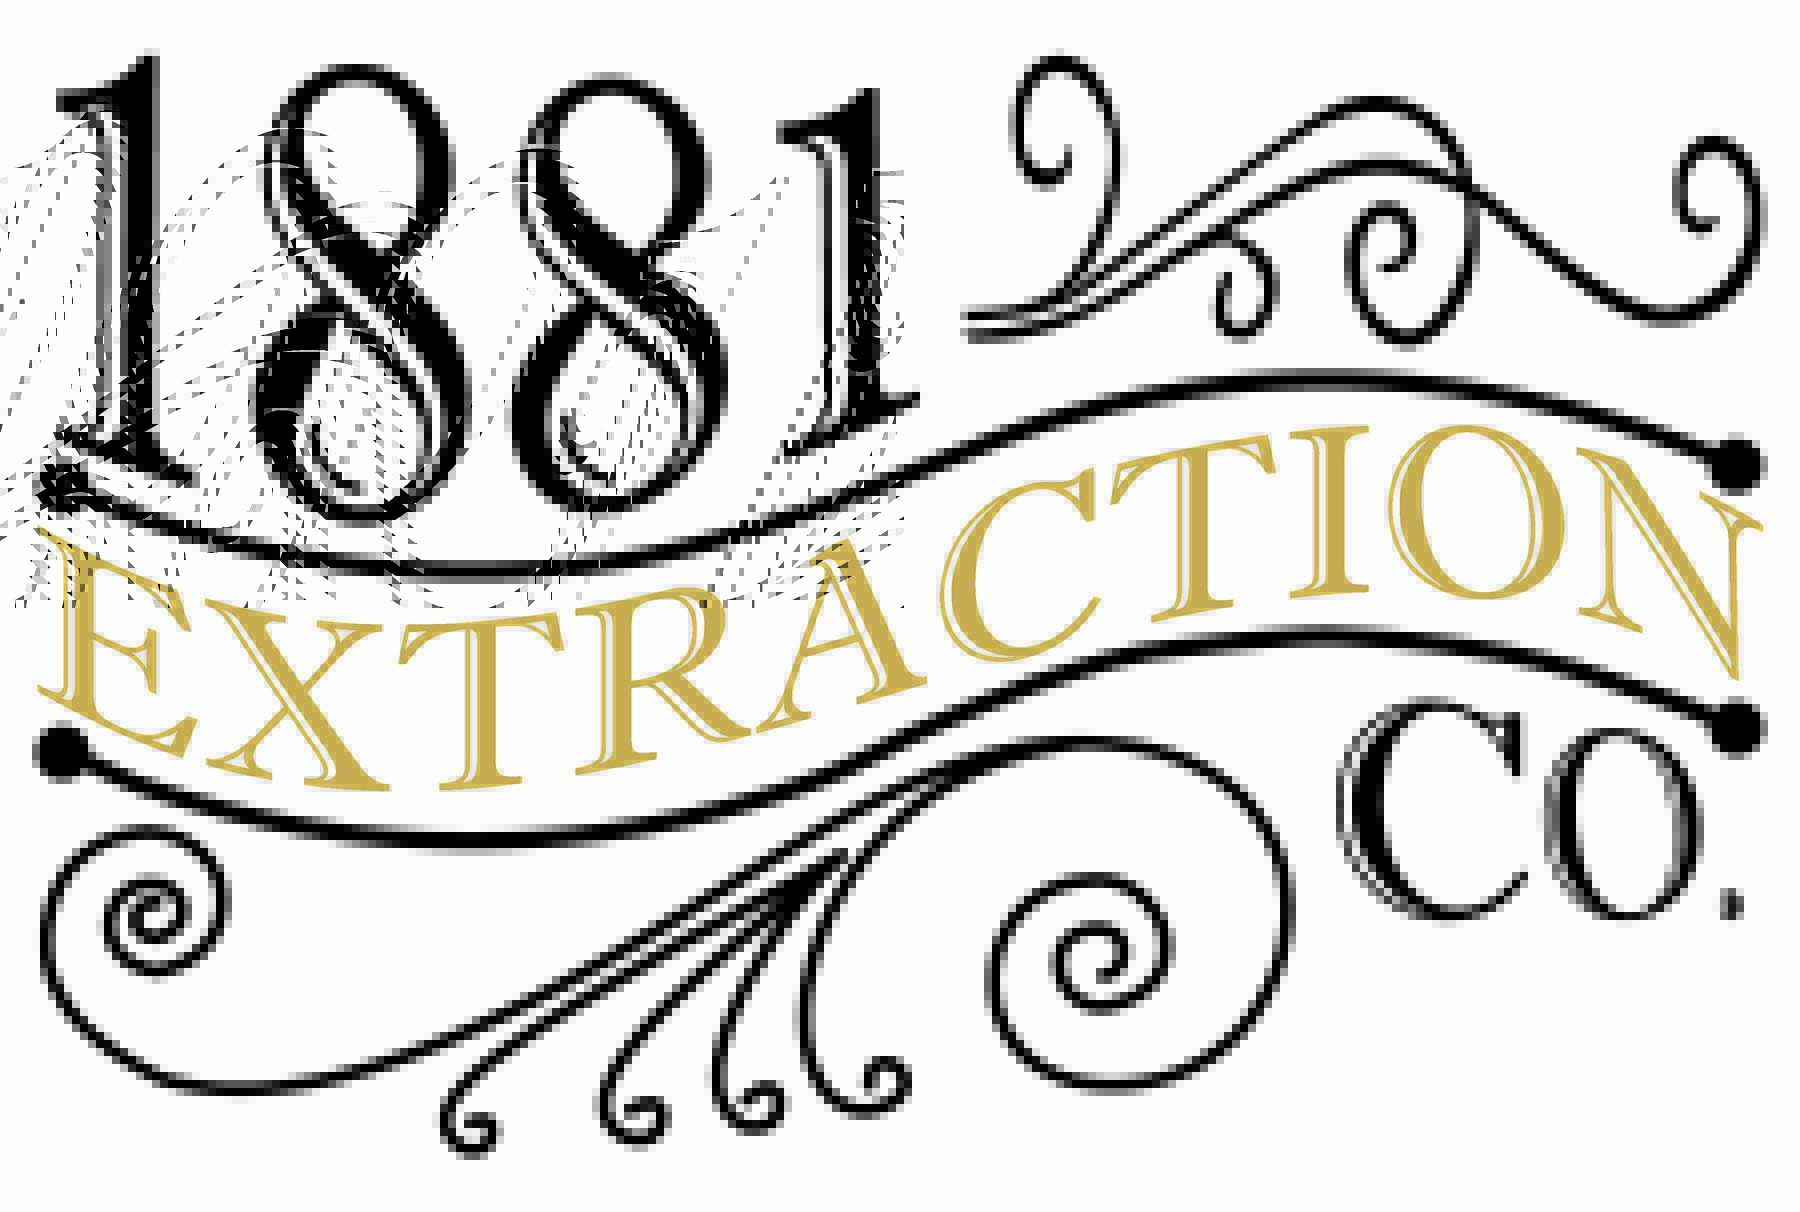 1881 Extraction Company